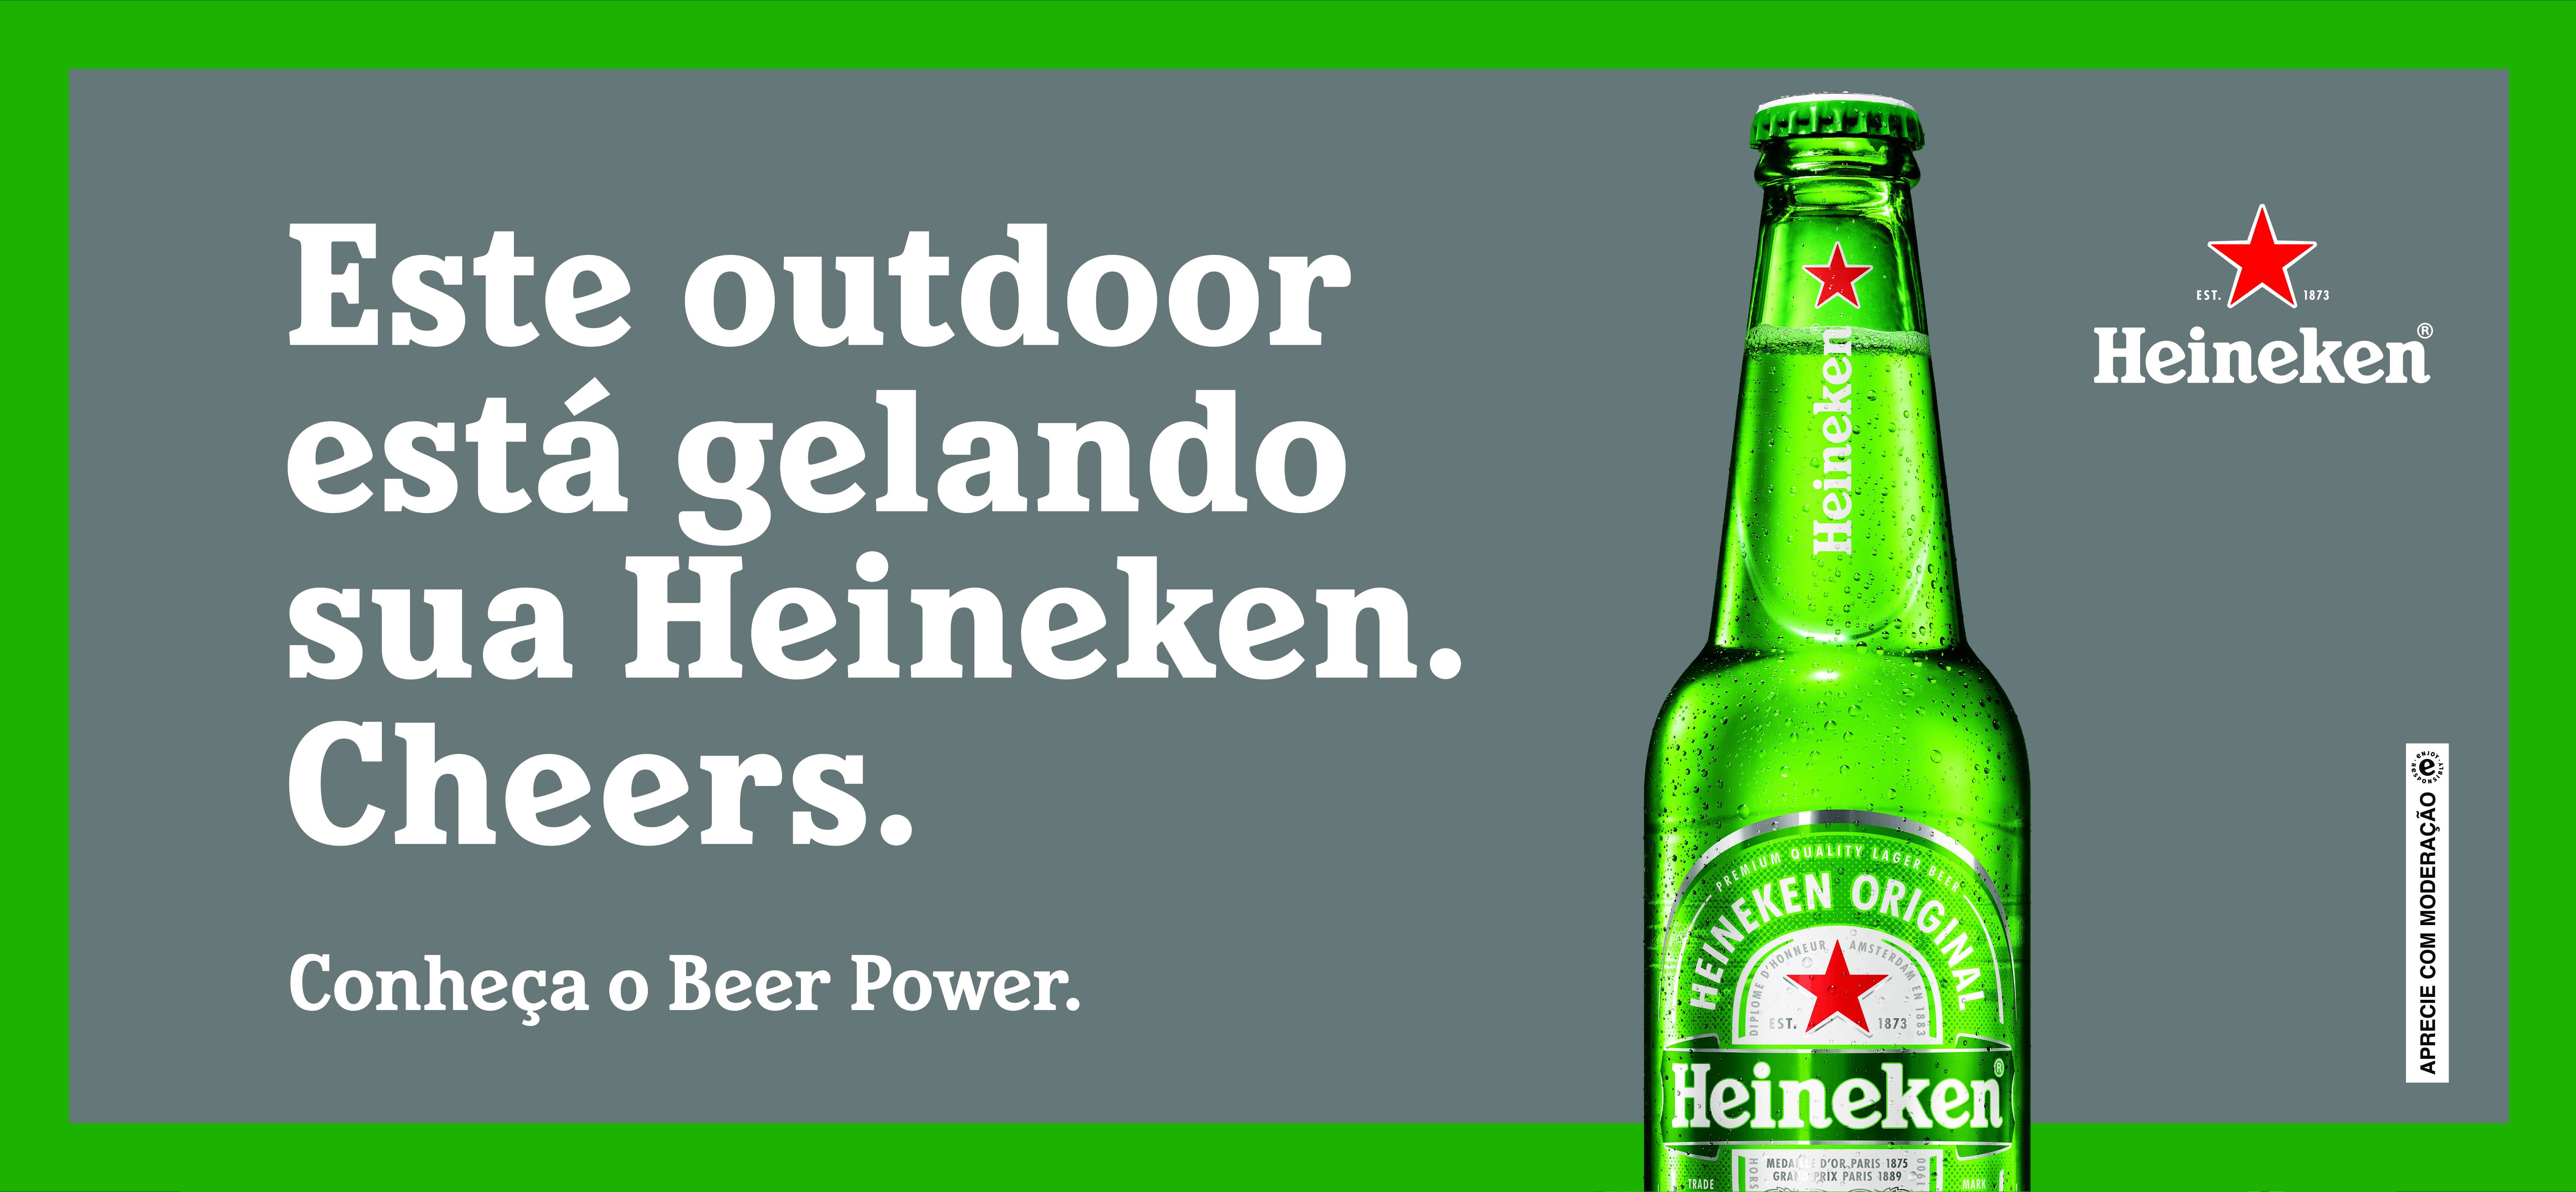 Beer power